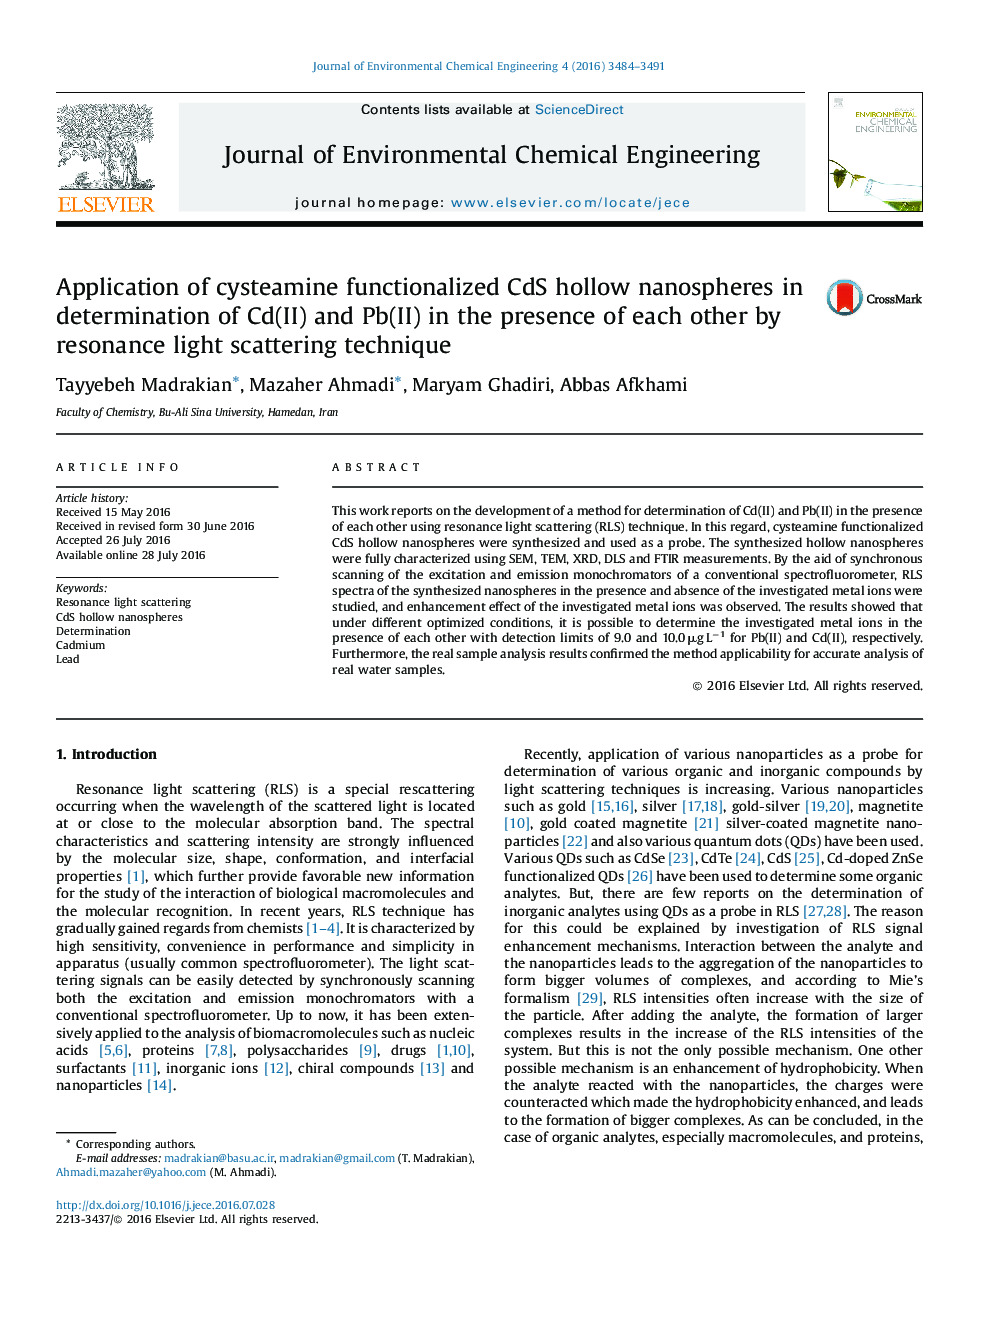 استفاده از نانومتخلخل‌های توخالی CdS کاربردی سیستامین در تعیین Cd (II) و Pb (II) در حضور یکدیگر با روش پراکندگی نور رزونانس